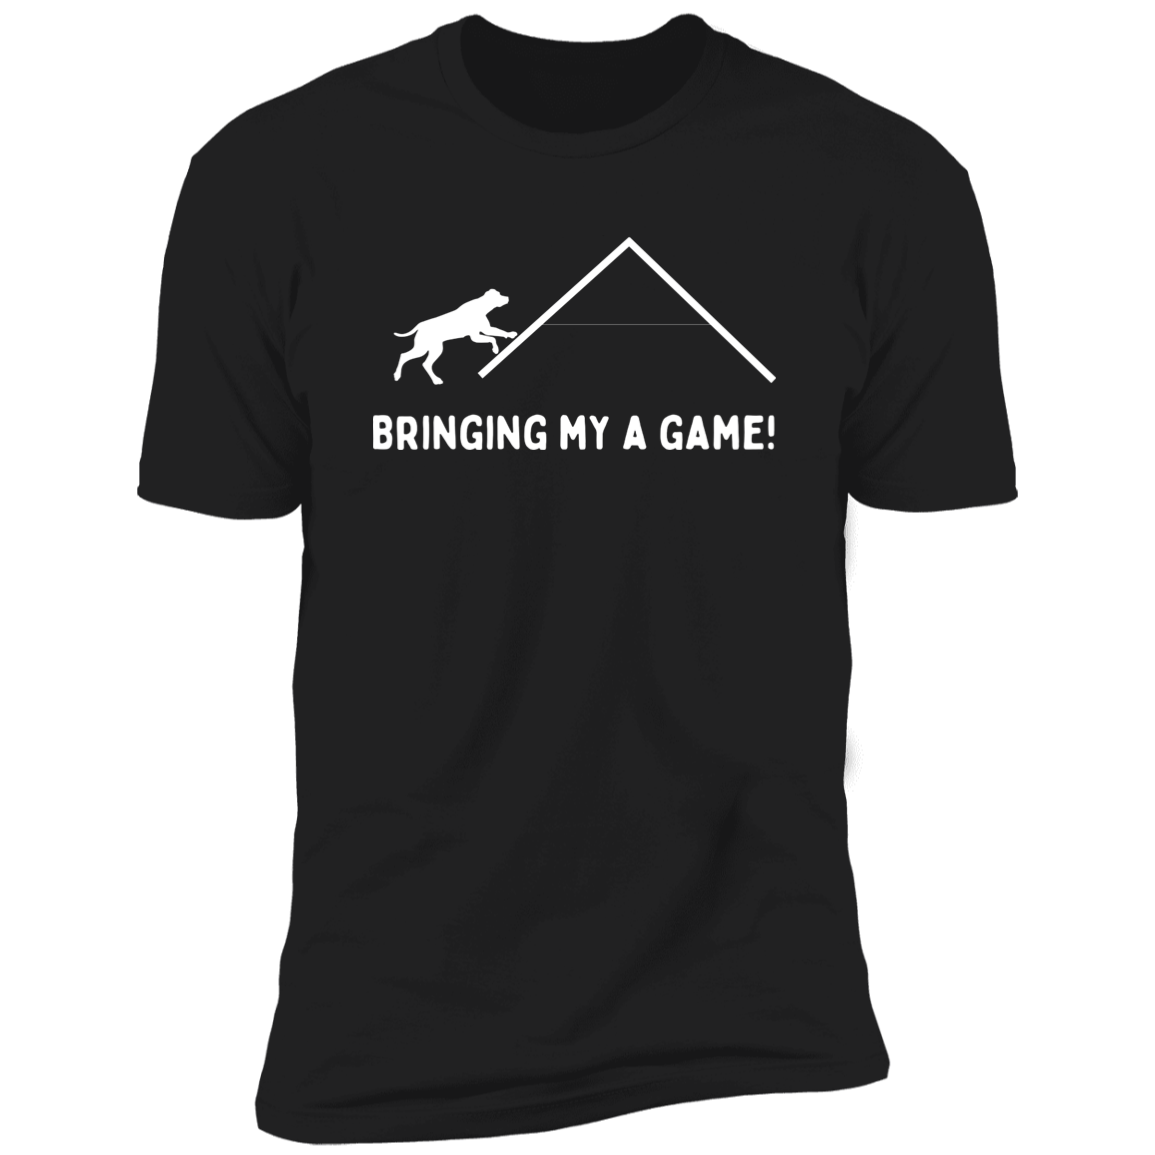 Bringing My A Game Agility T-shirt, Dog Agility Shirt for humans, in blackBringing My A Game Agility T-shirt, Dog Agility Shirt for humans, in black